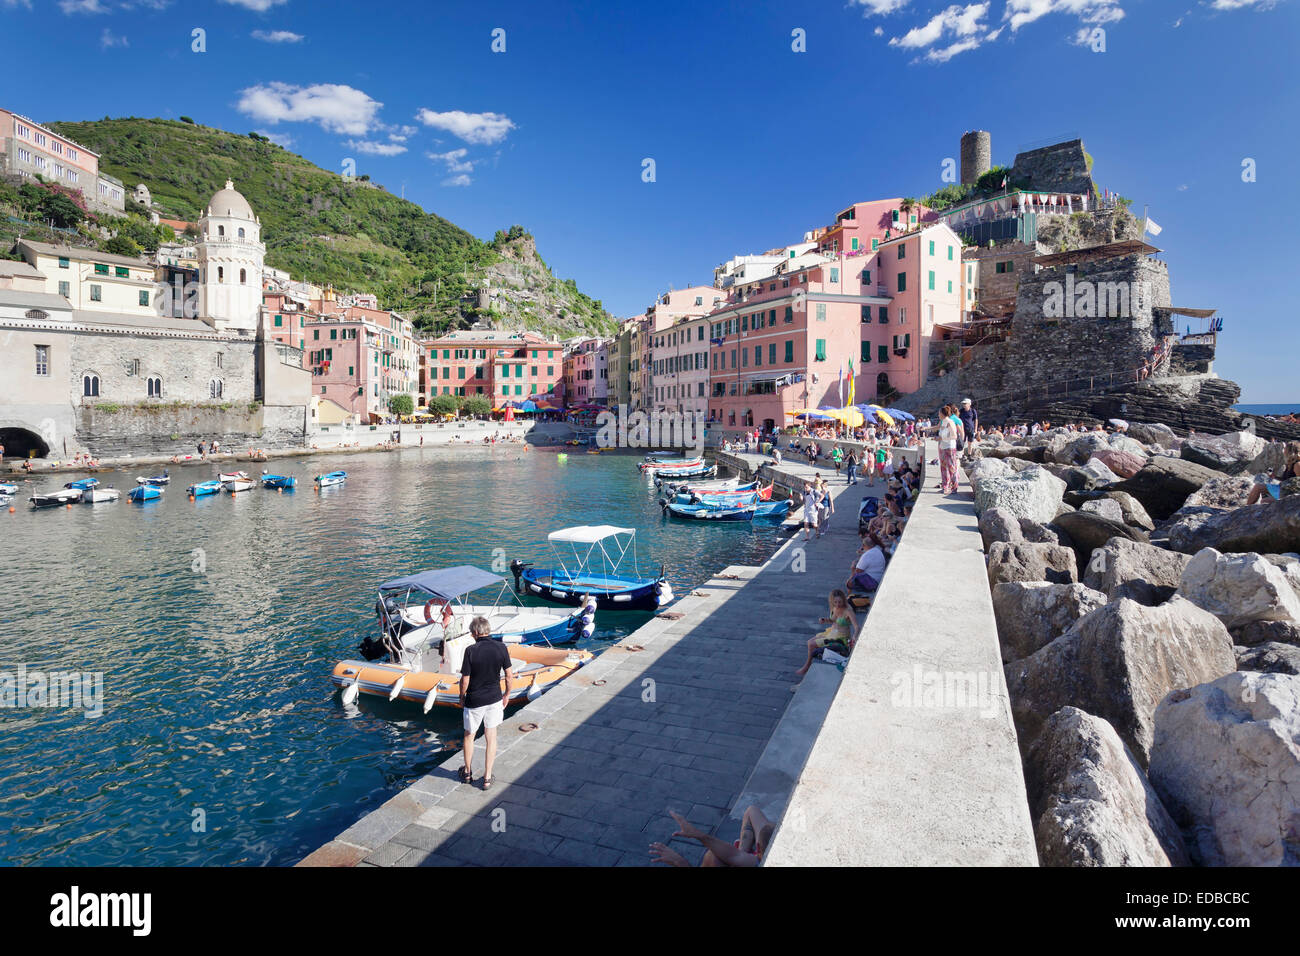 Parete di Porto, Vernazza, Cinque Terre Riviera di Levante, provincia di La spazia, Liguria, Italia Foto Stock